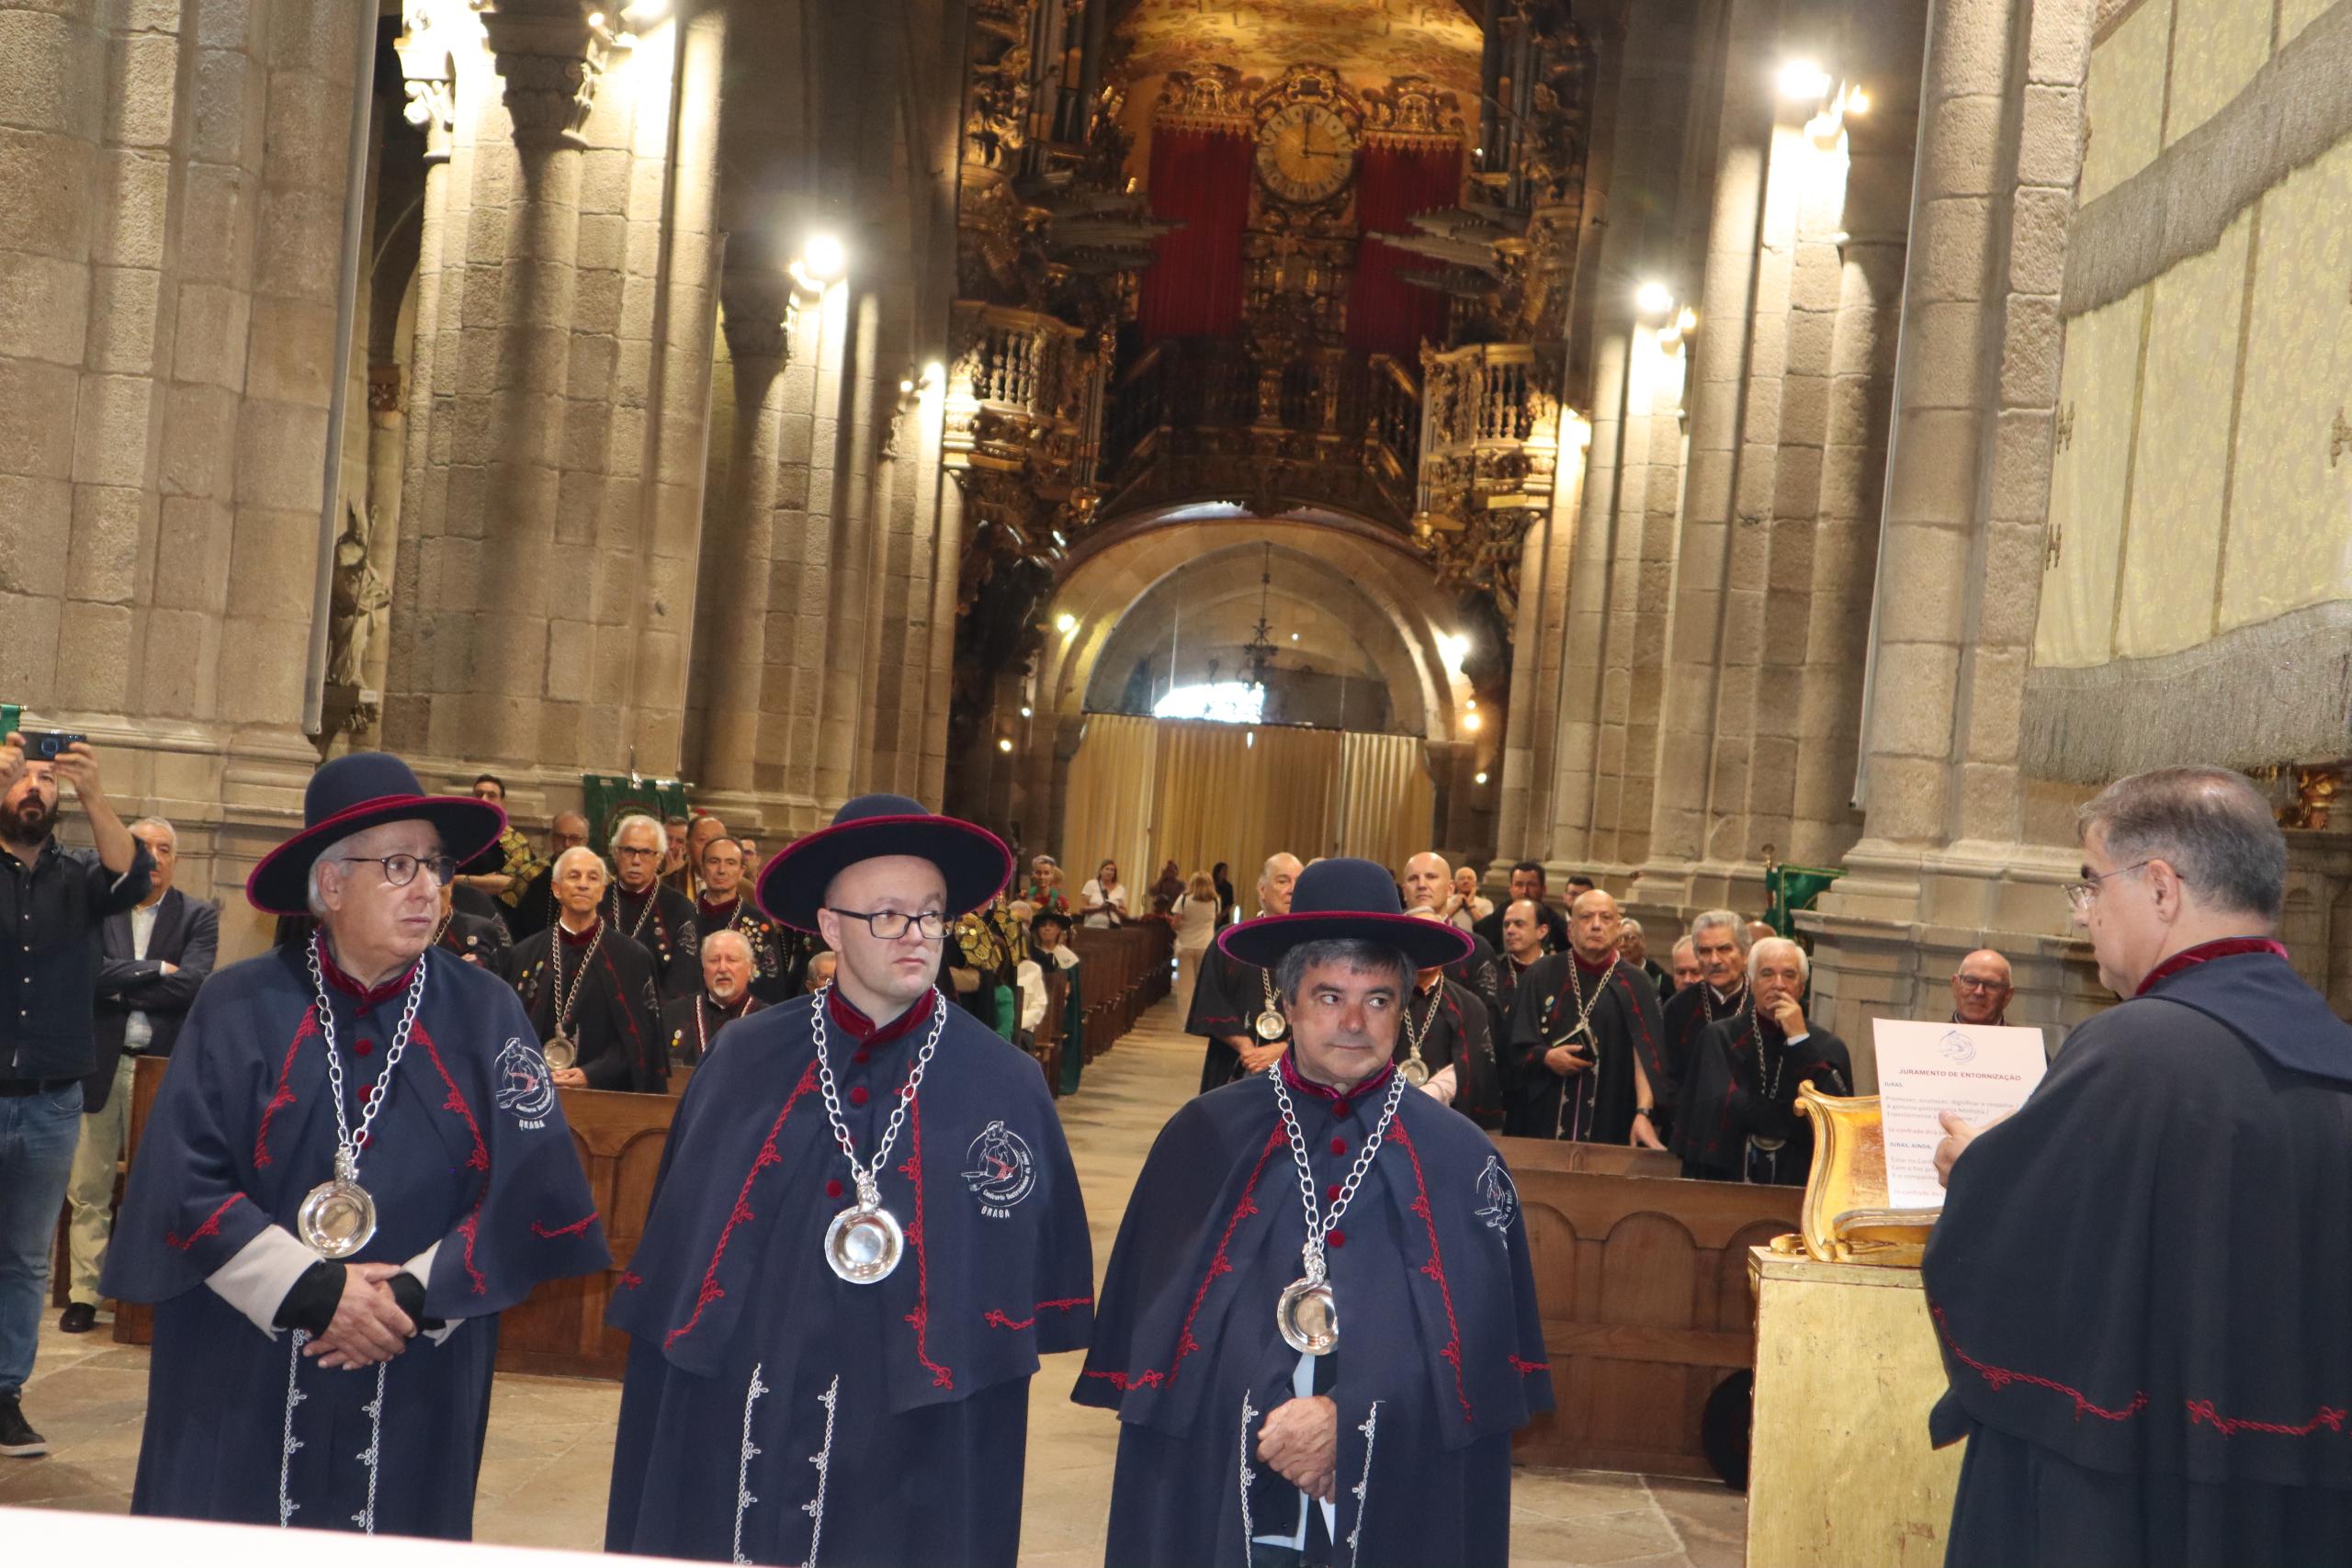 Confraria do Abade concretiza sonho da sede e reforça compromisso na defesa da gastronomia de Braga e do Minho